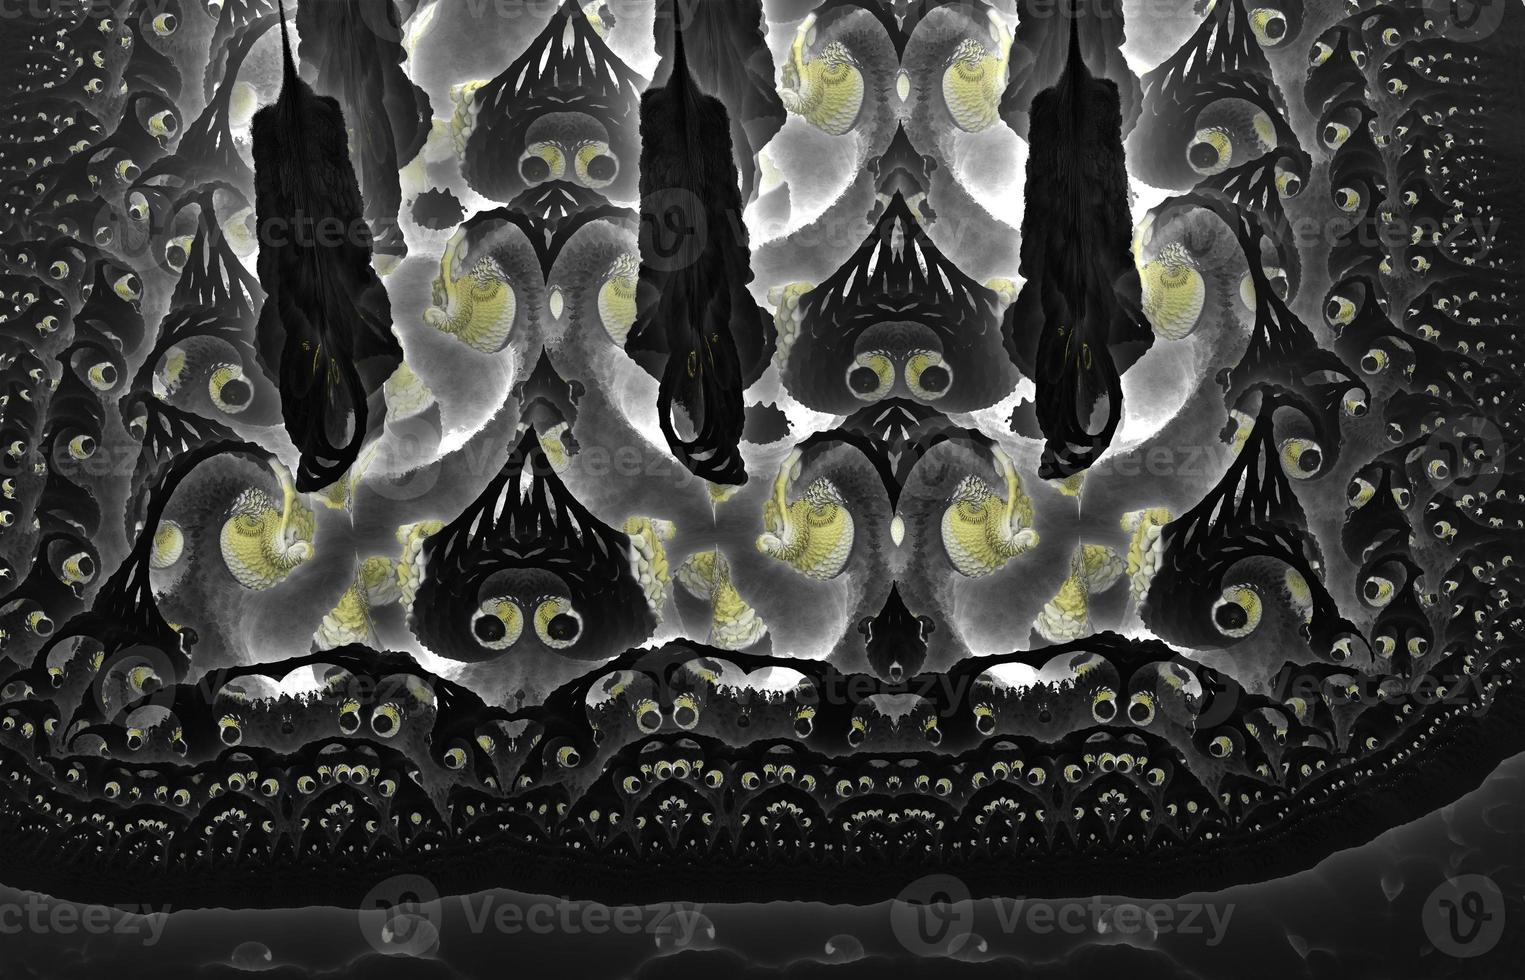 disegno frattale generato dal computer astratto di orrore. Illustrazione 3d di un bellissimo frattale matematico infinito di mandelbrot. foto